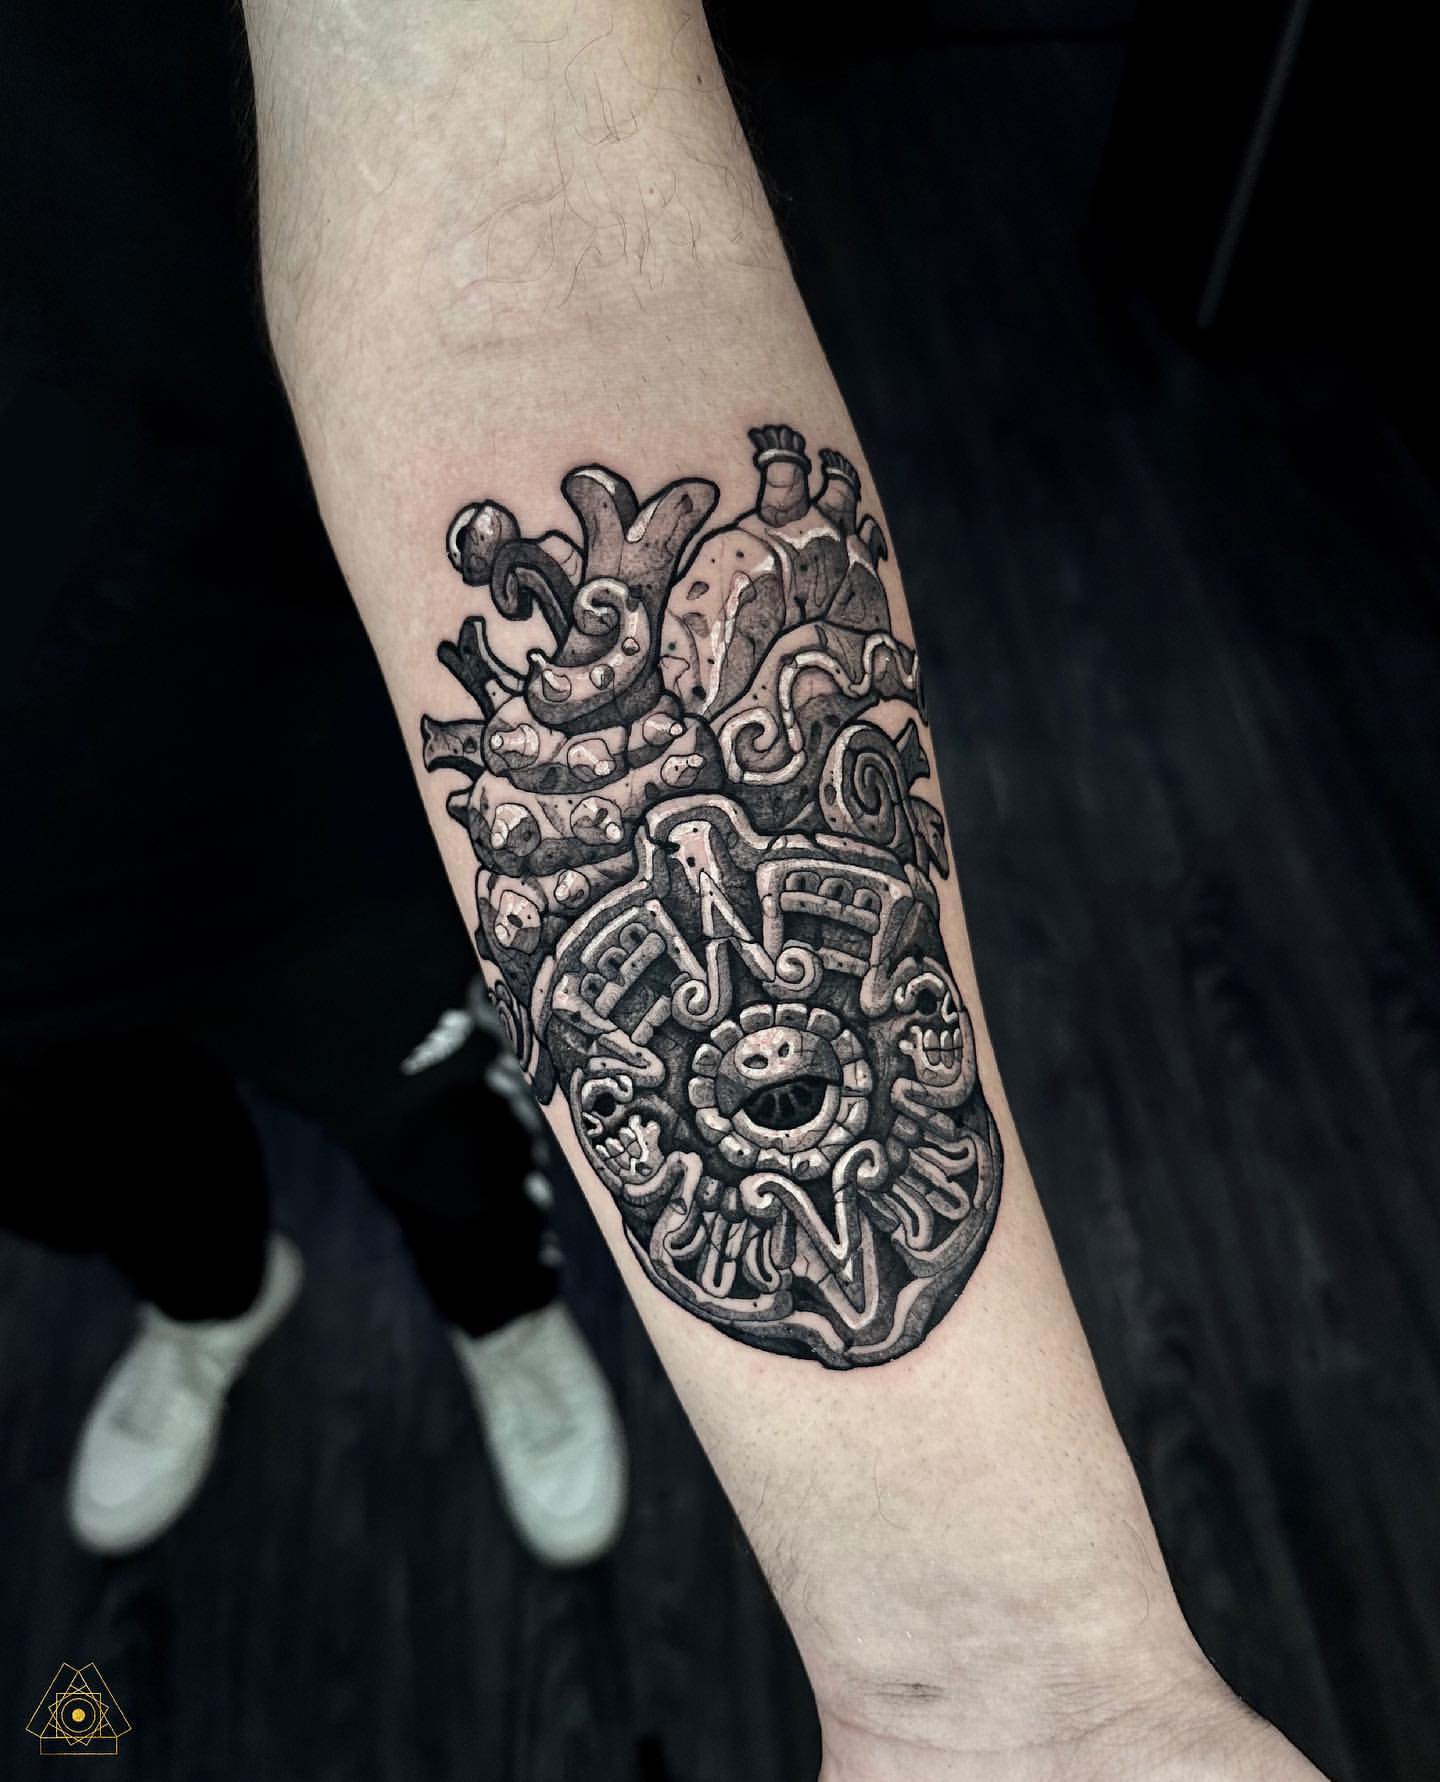 Tattoo | Skull sleeve tattoos, Realistic tattoo sleeve, Cool arm tattoos